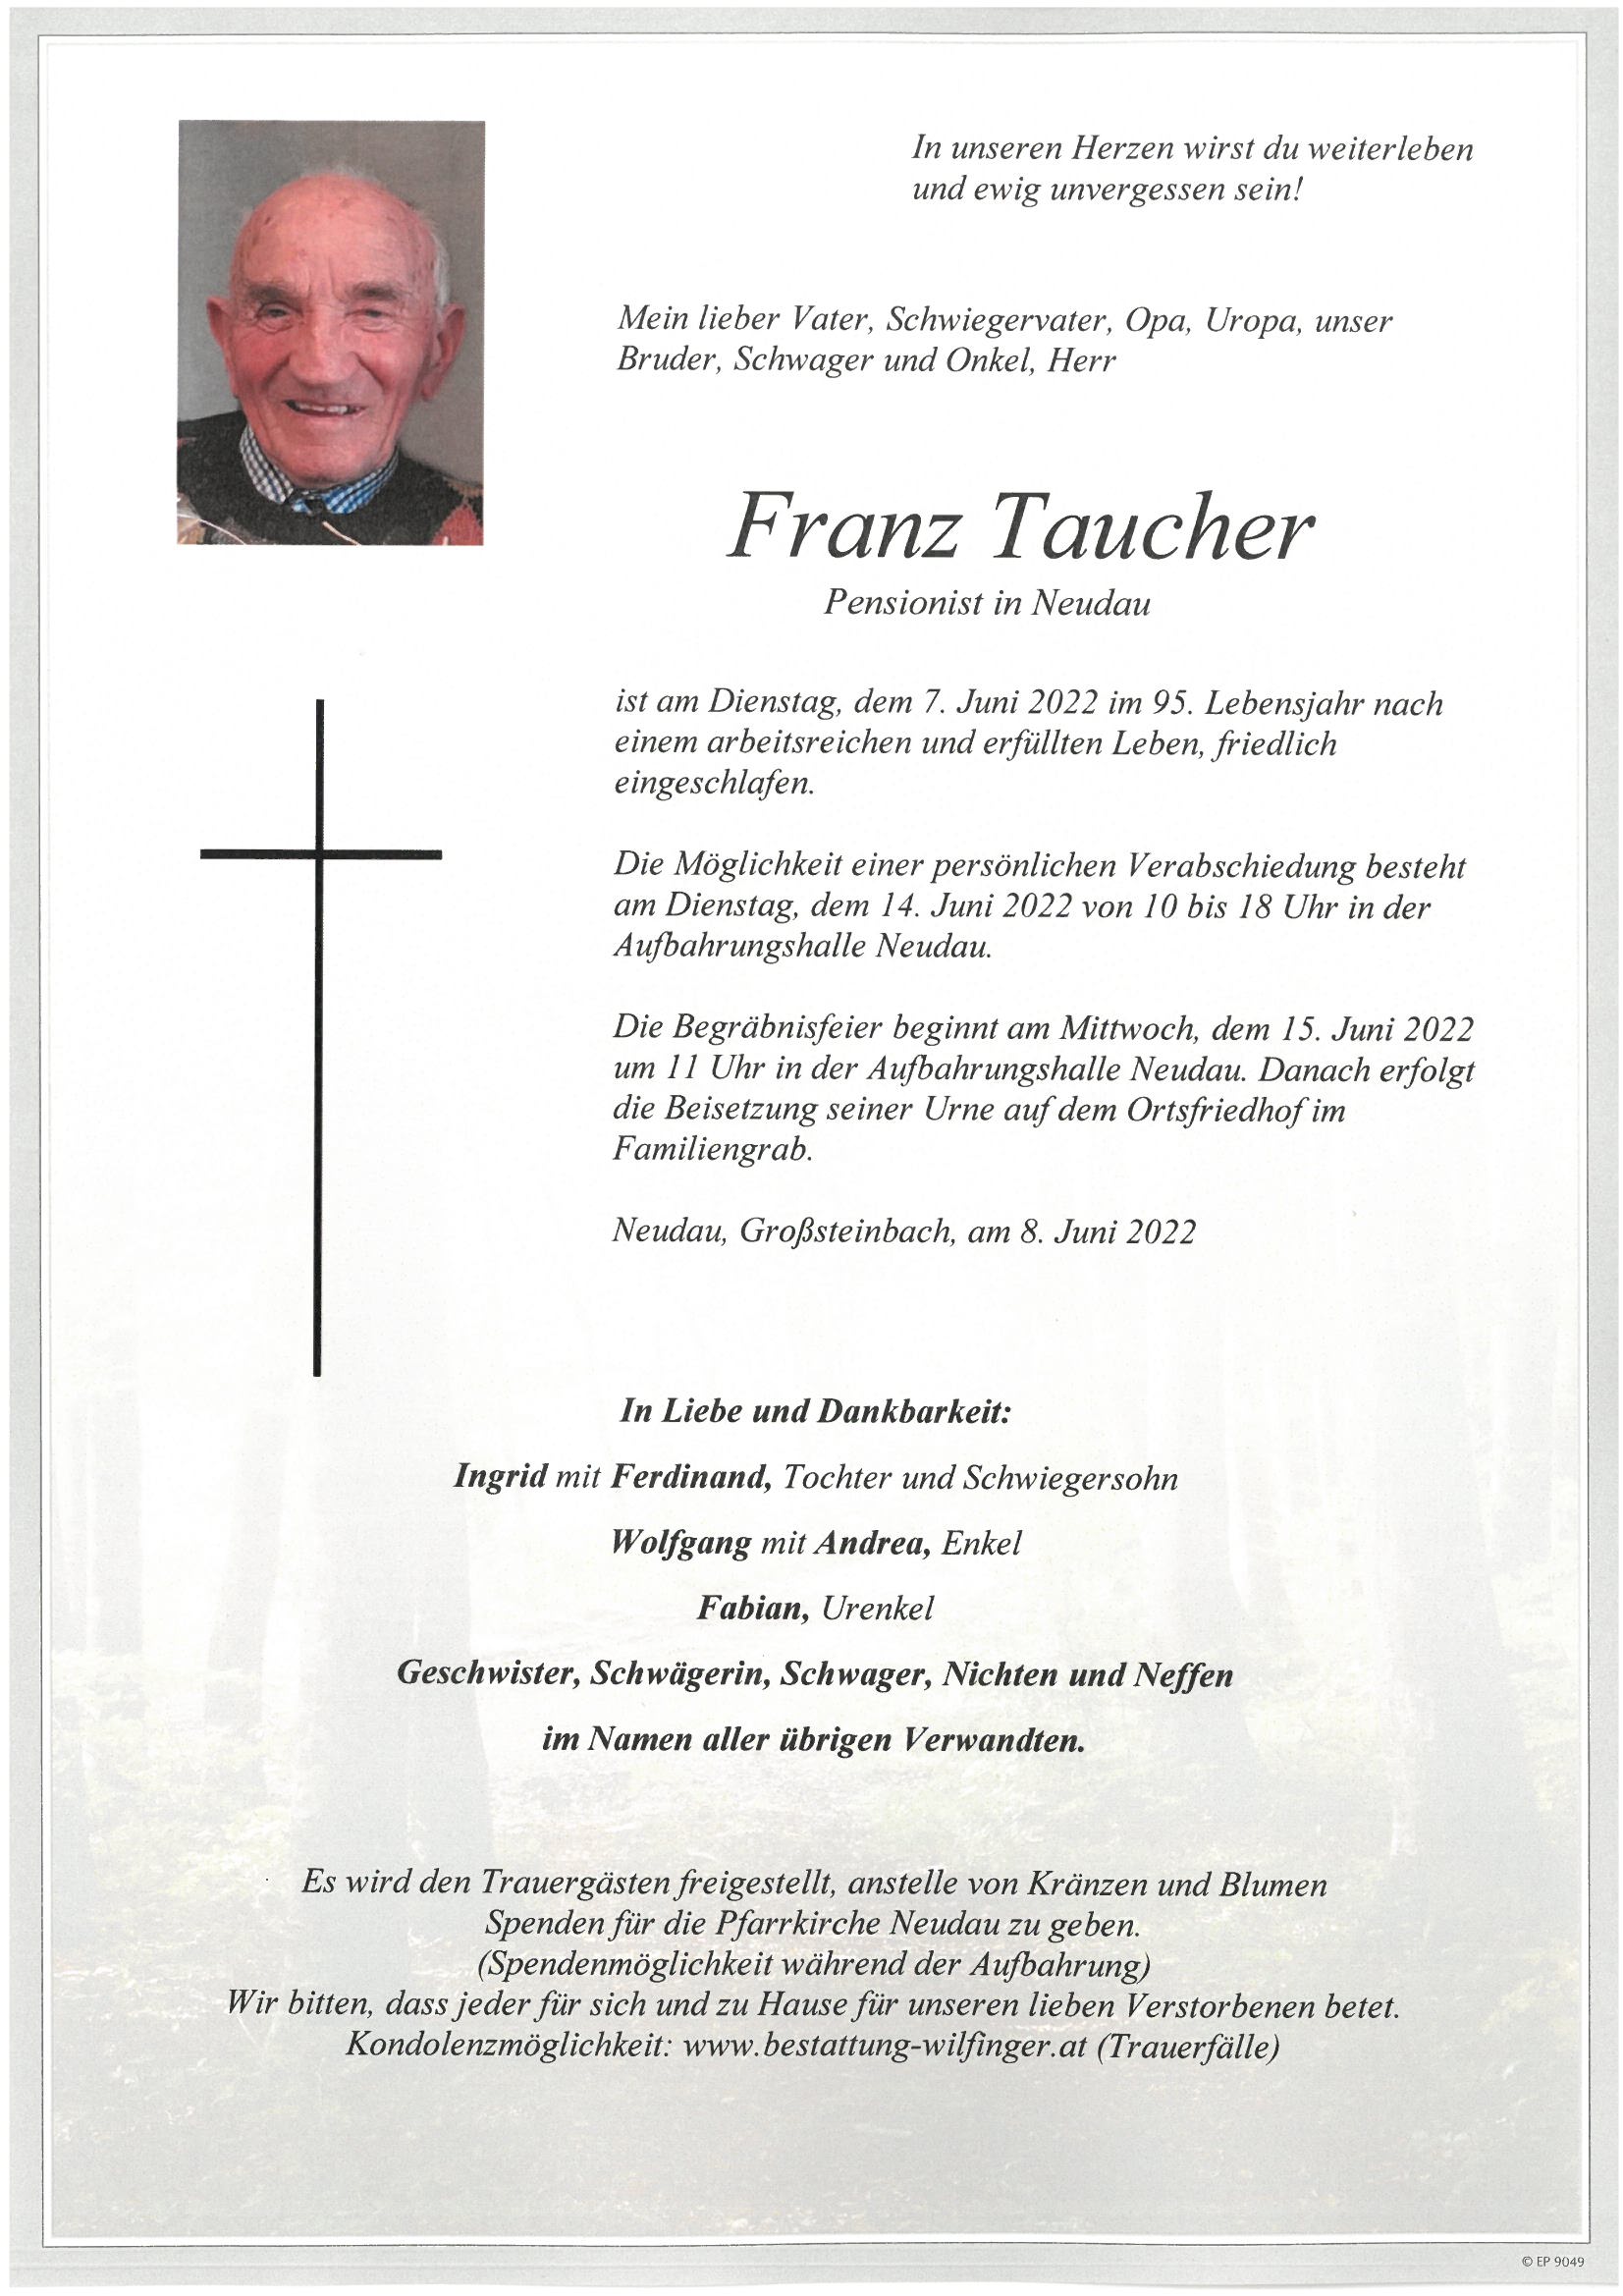 Franz Taucher, Neudau